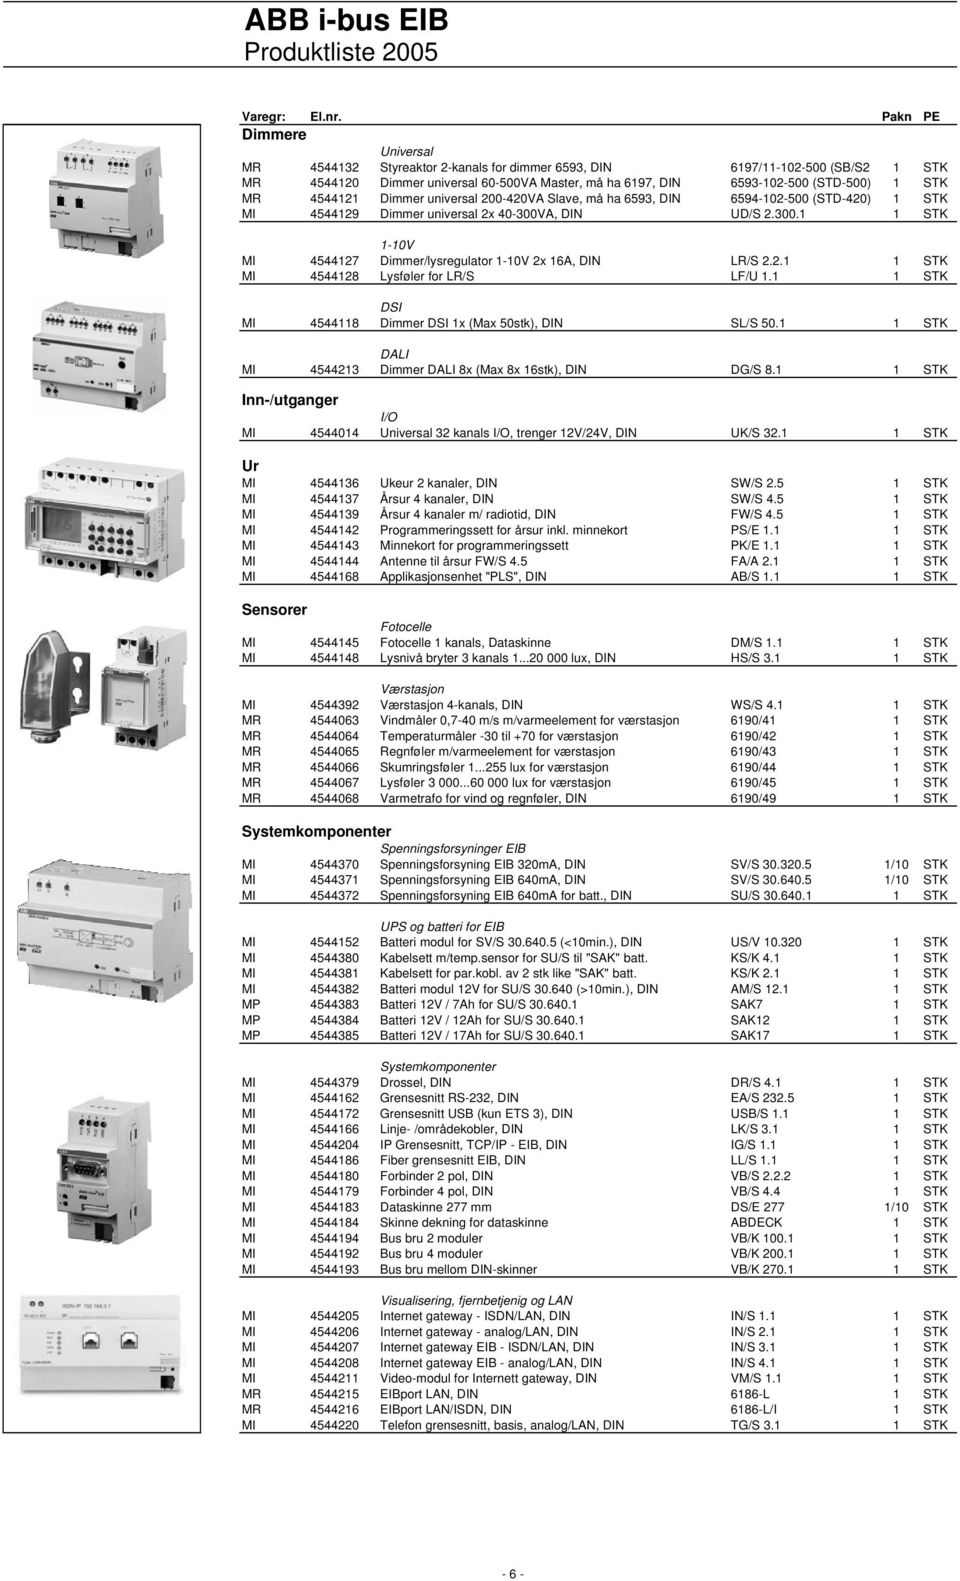 2.1 1 STK MI 4544128 Lysføler for LR/S LF/U 1.1 1 STK DSI MI 4544118 Dimmer DSI 1x (Max 50stk), DIN SL/S 50.1 1 STK DALI MI 4544213 Dimmer DALI 8x (Max 8x 16stk), DIN DG/S 8.